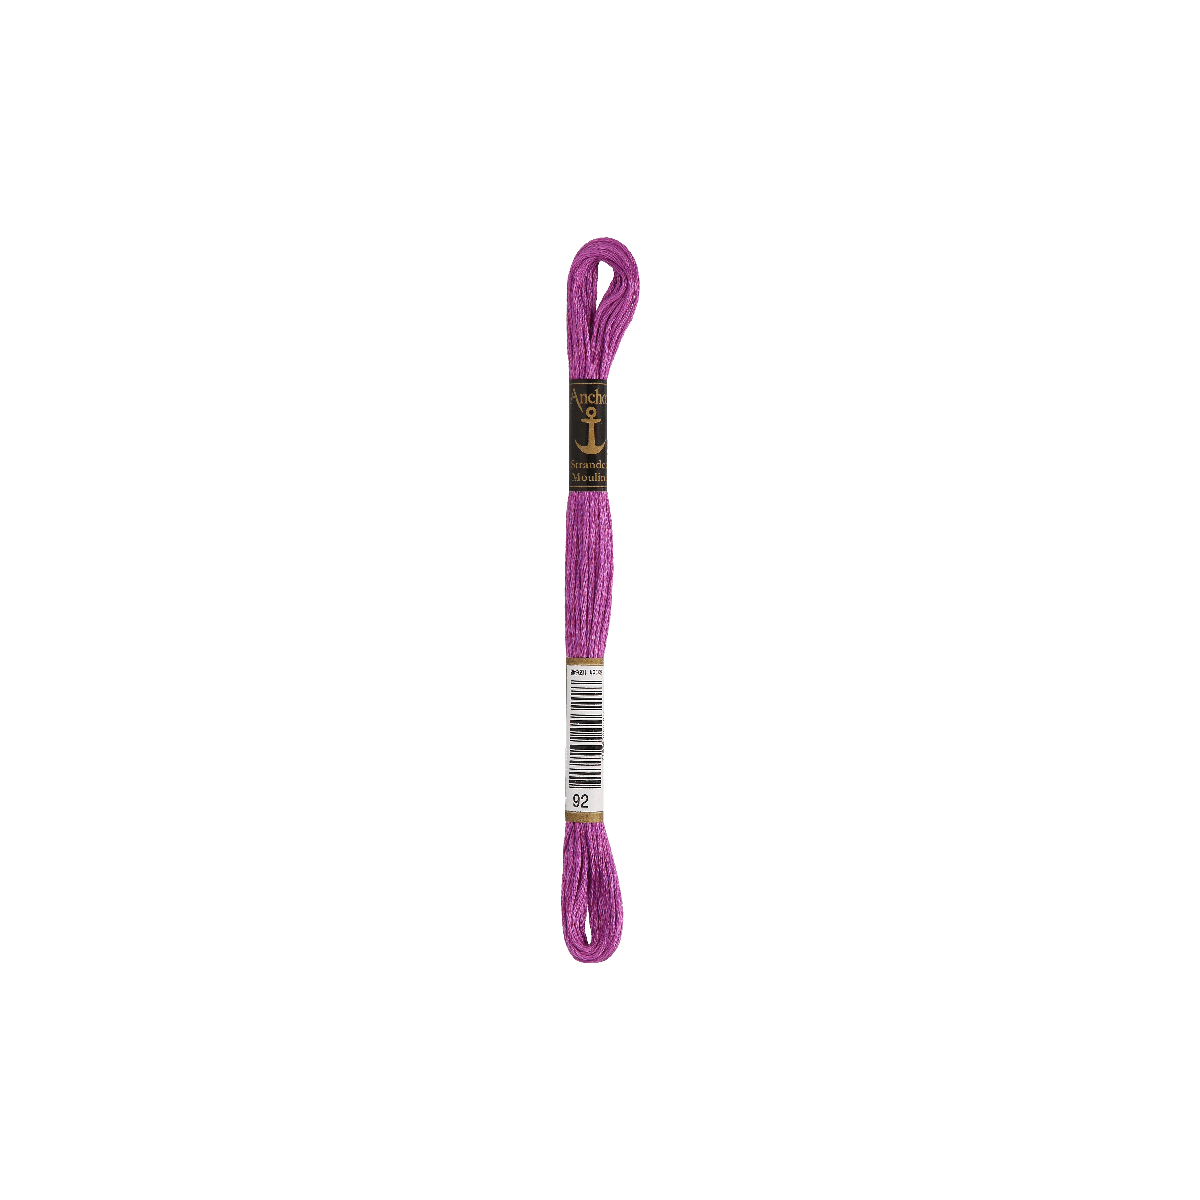 Anchor Sticktwist 8m, lilla, cotone, colore 92, 6 fili